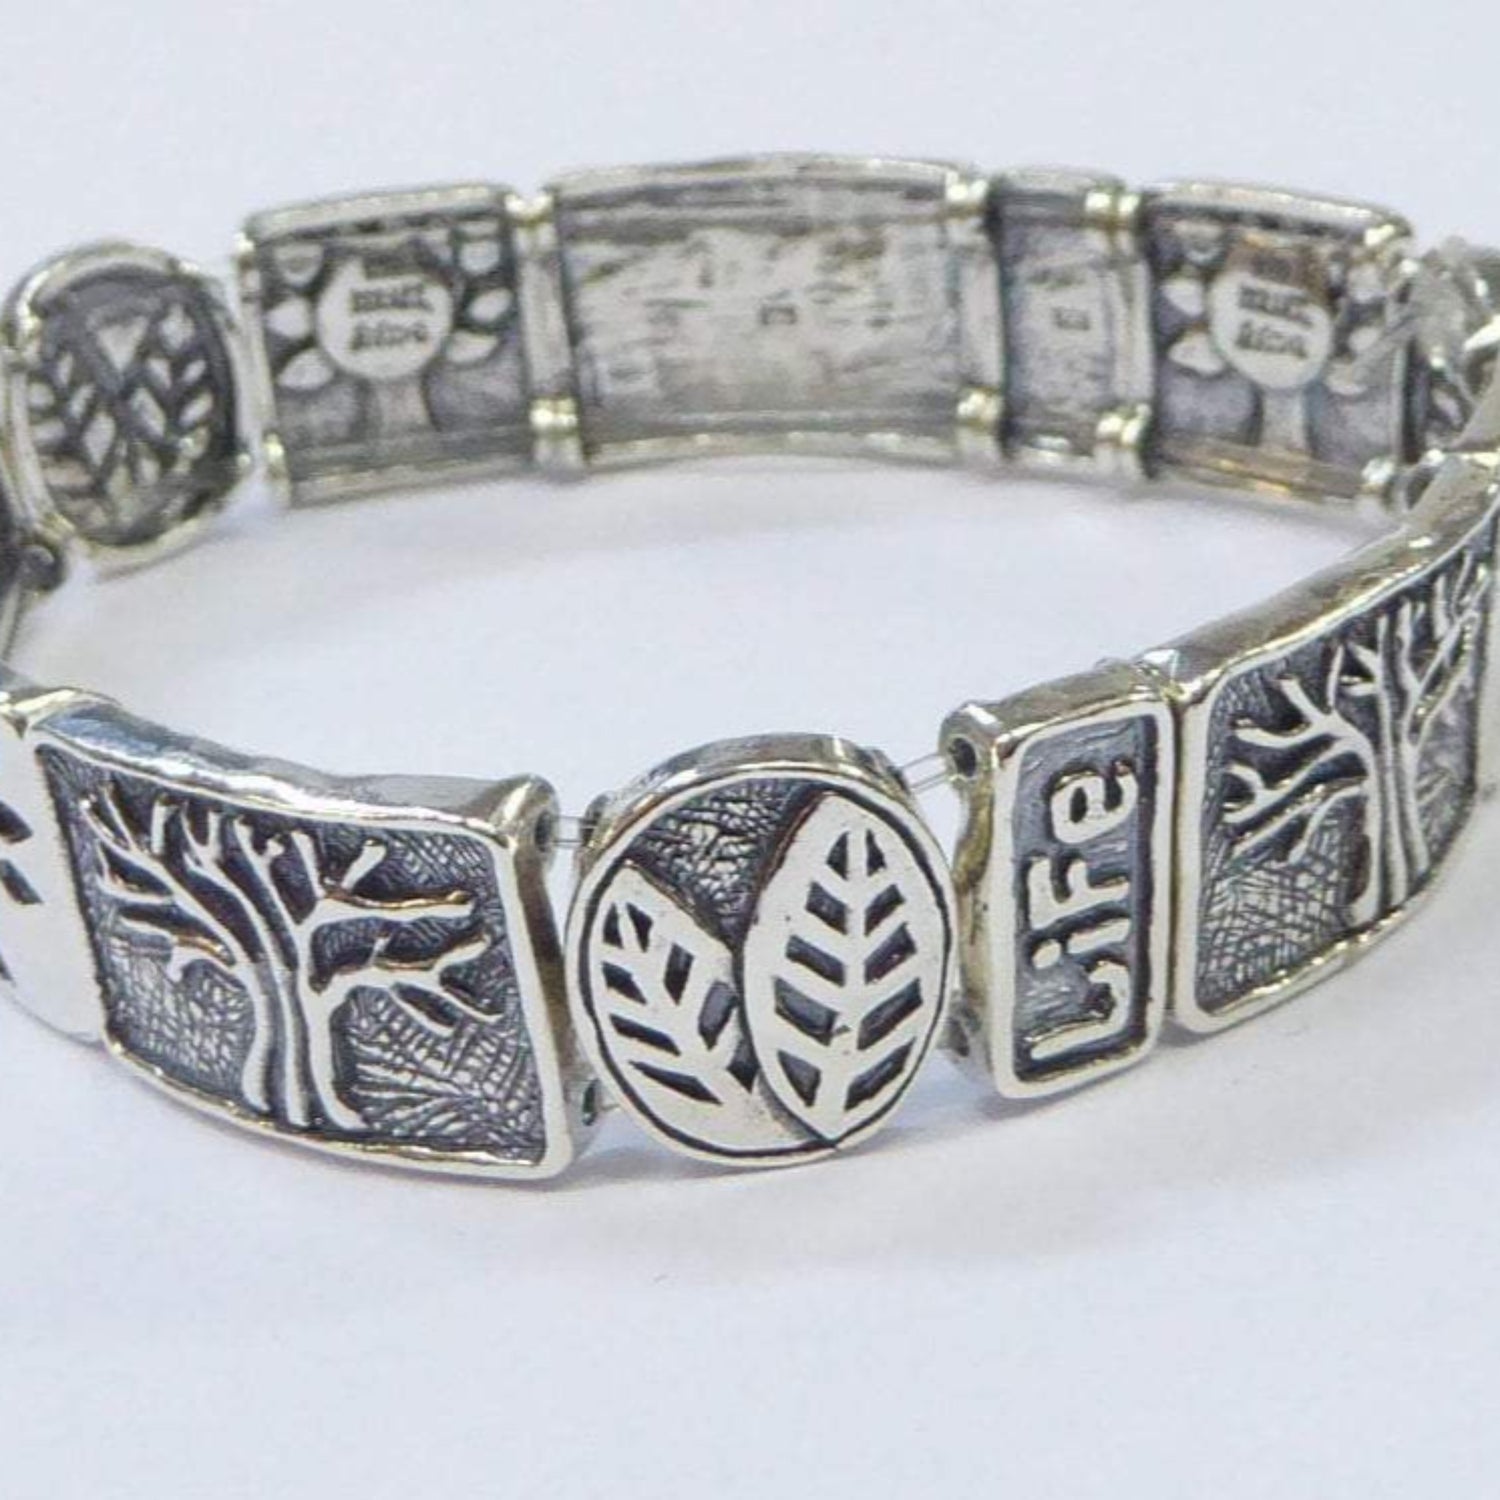 Bluenoemi Jewelry Bracelets amethyst / silver Silver Bracelet Israeli bracelets Life Tree of Life